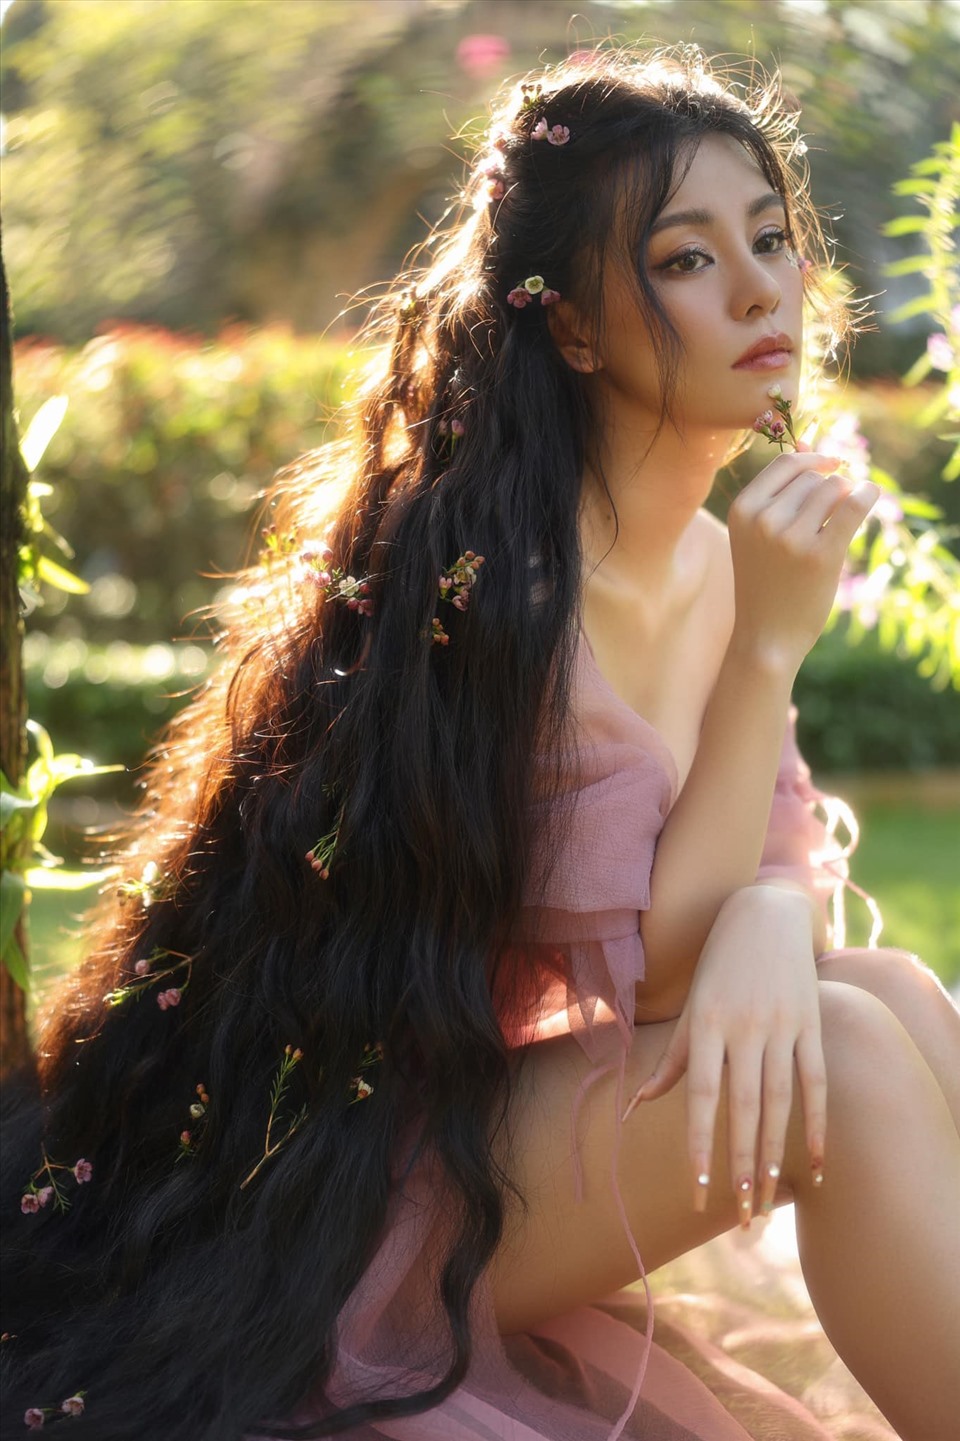 Bùi Lan Hương (sinh ngày 11 tháng 6 năm 1989 tại Hà Nội)[1] là một nữ ca sĩ kiêm nhạc sĩ, nhà sản xuất thu âm người Việt Nam. Hương còn là nghệ sĩ từng giành được 1 giải Cống hiến ở hạng mục “Nghệ sĩ mới của năm” năm 2019.